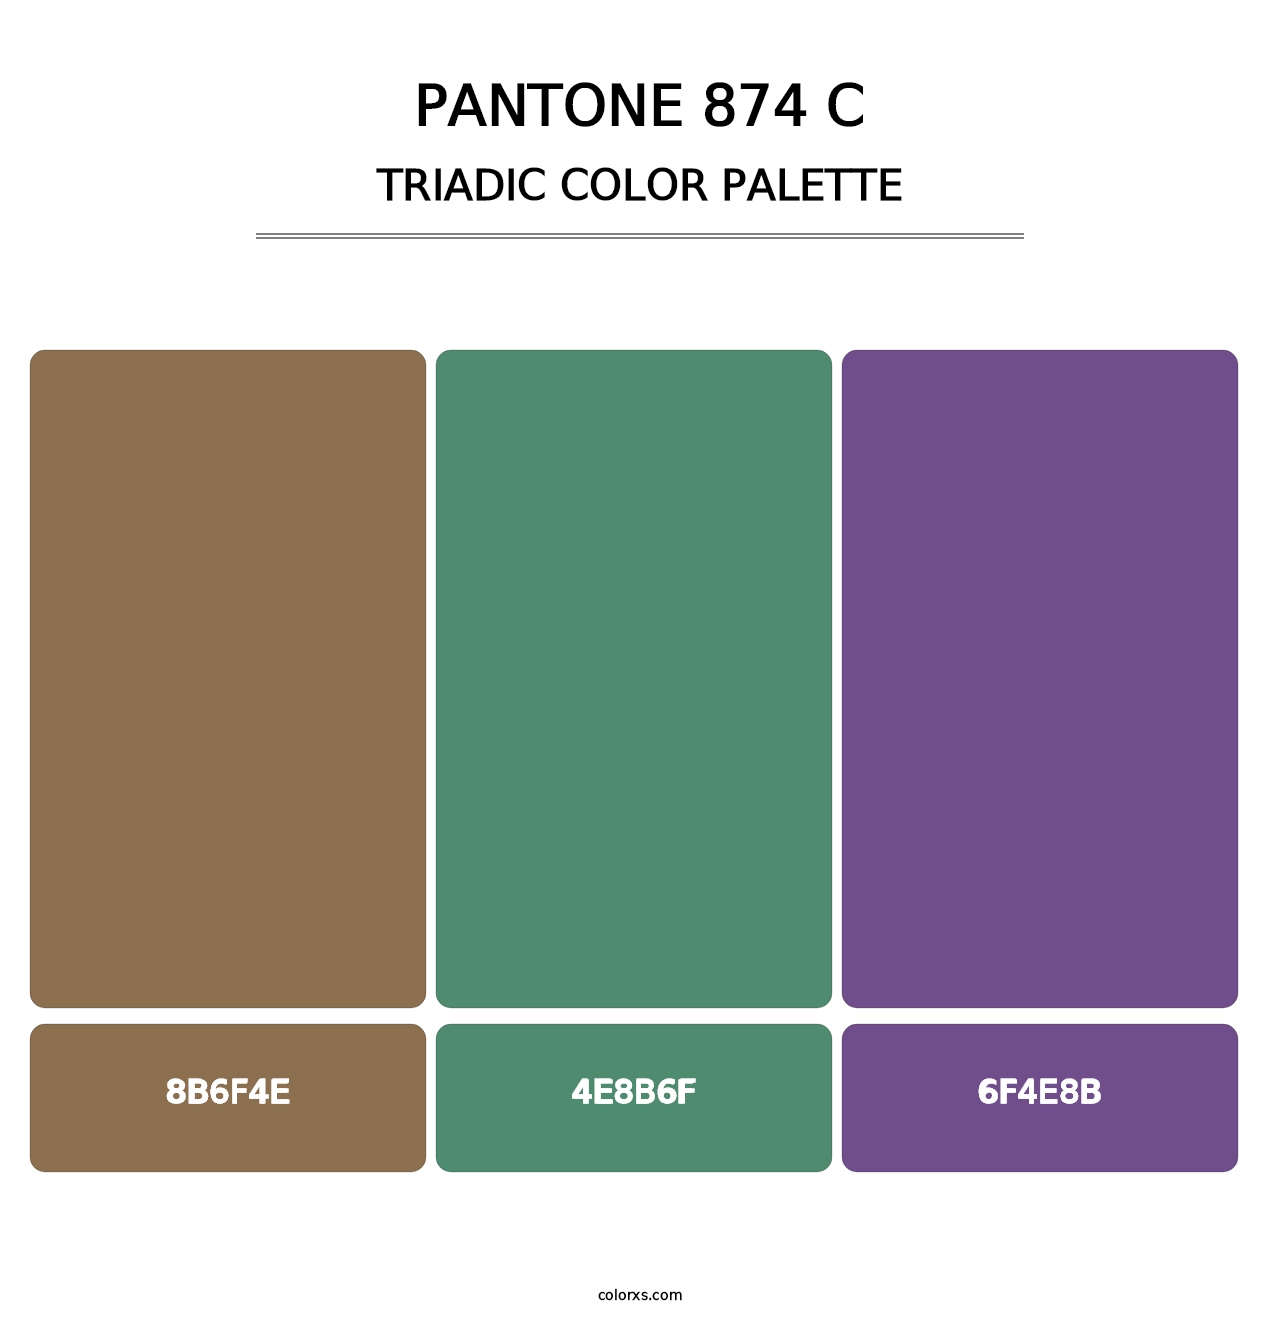 PANTONE 874 C - Triadic Color Palette